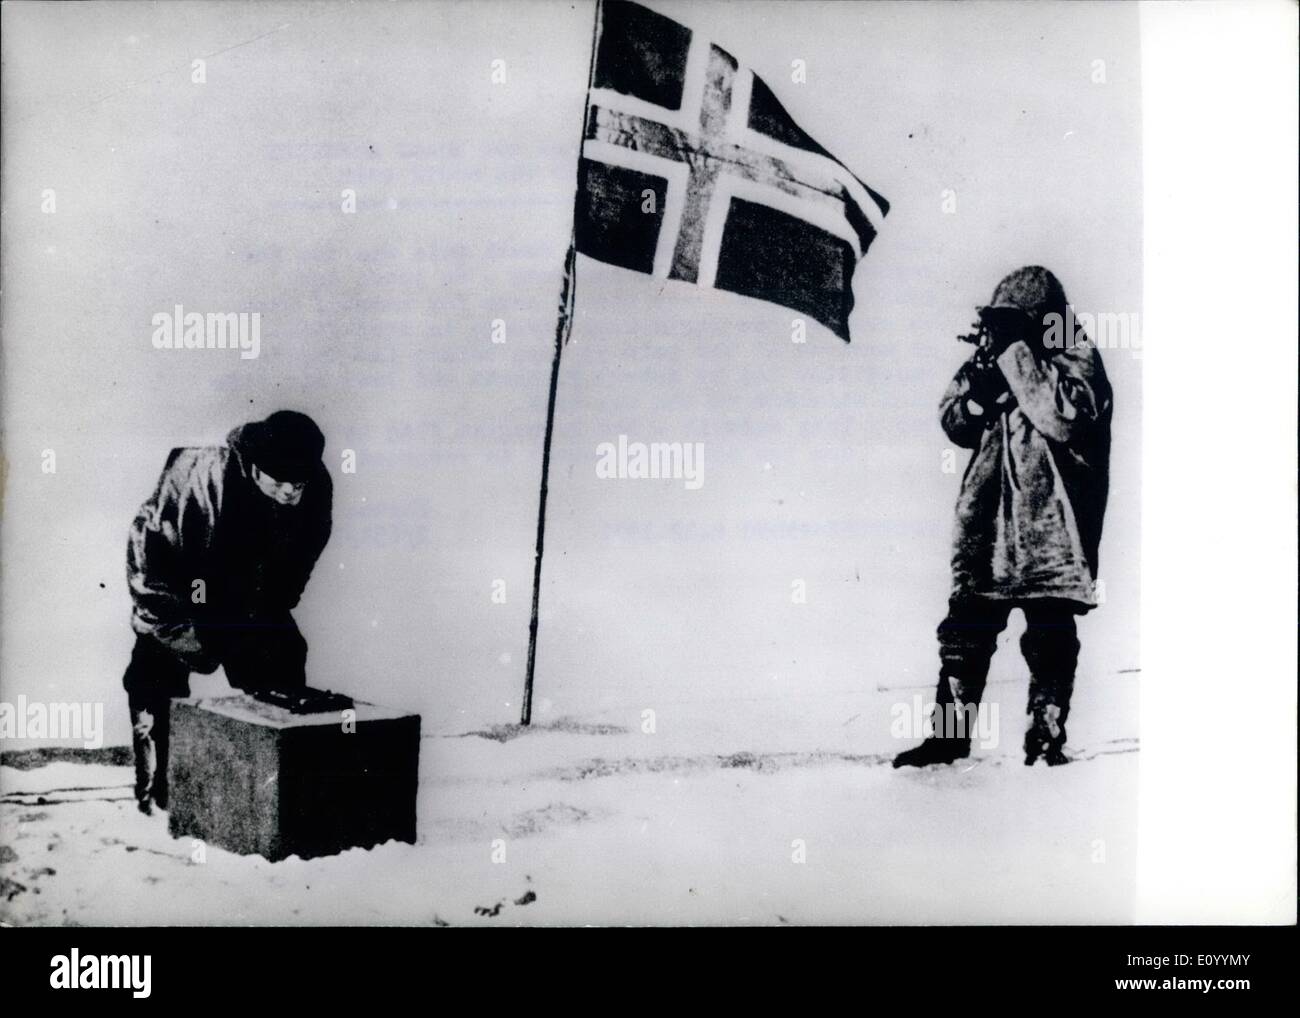 12. Dezember 1971 - 14. Dezember 1971: 60 Jahre Ago Roald Amundse erreichte den Südpol: als erste Mensch den Südpol zu erreichen war die norwegischen Forscher Roald Amundsen-60 Jahren! Amundsen hatte bereits einen Namen gemacht, als er 1903-1906, Nordwest-Passage überquerte. Er kam am Pol 53 Tage vor die englische Expedition unter der Leitung von Robert F. Scott, Loat seines Lebens in einem Schneesturm auf dem Weg zurück. Das Foto zeigt. Machten sie It-die norwegische Flagge gehisst, und der historische Augenblick wird auf Film aufgezeichnet. Stockfoto